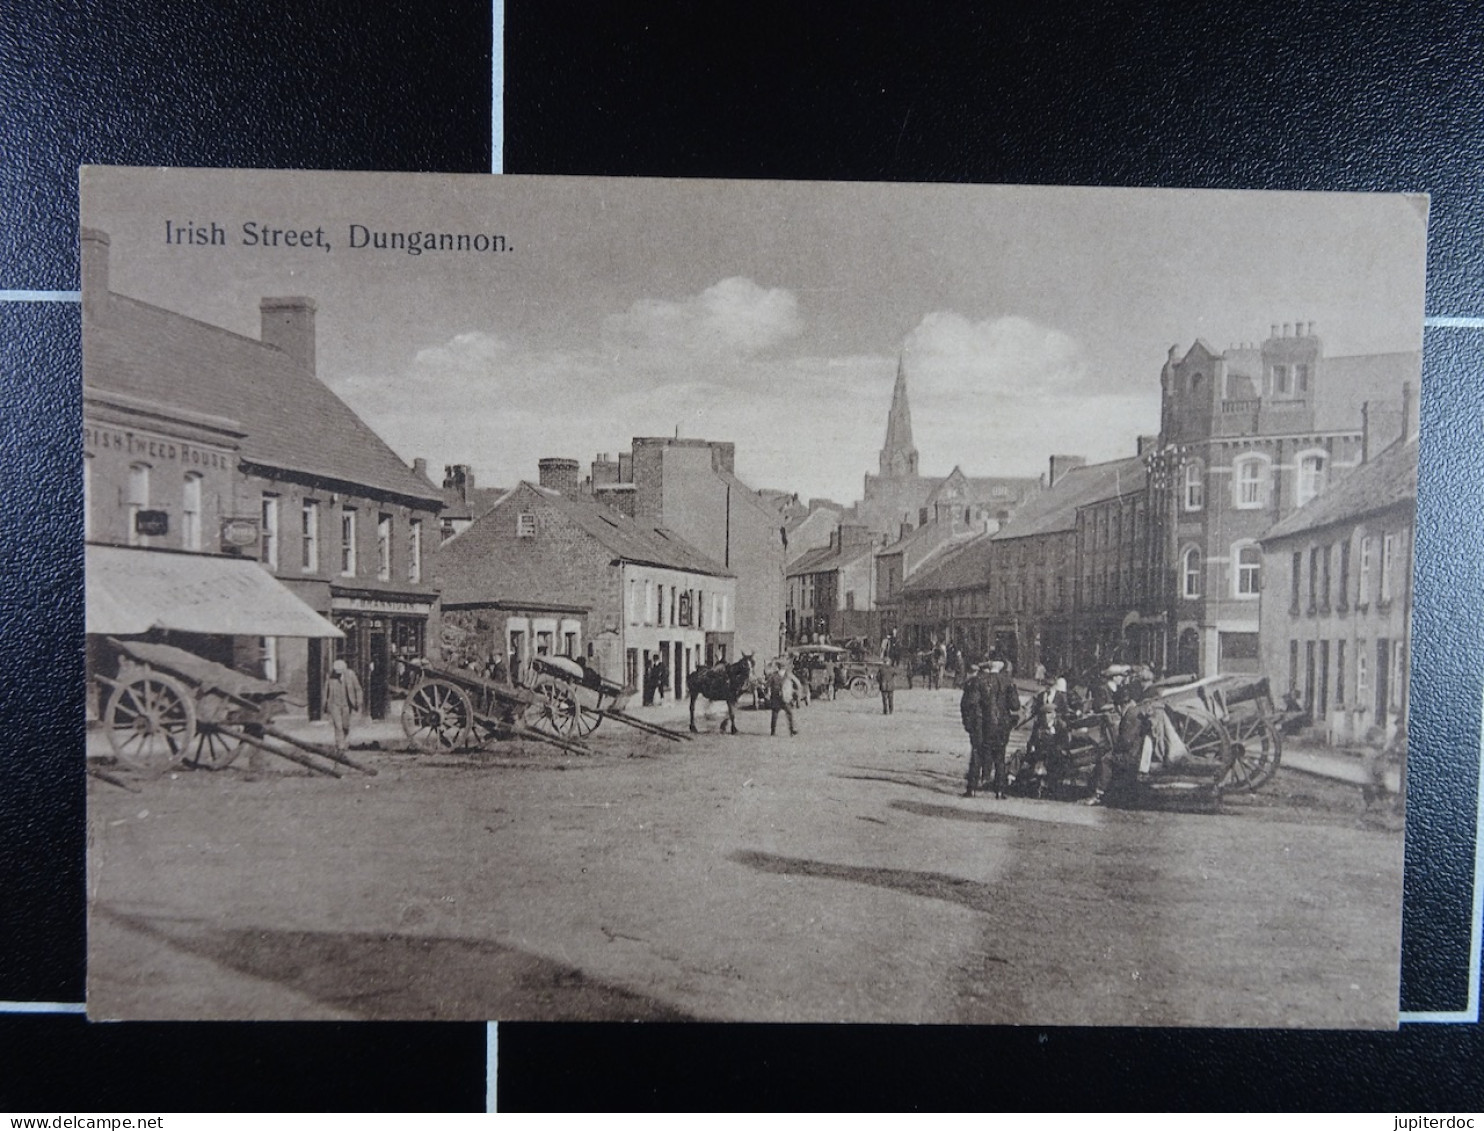 Irish Street, Dungannon - Tyrone